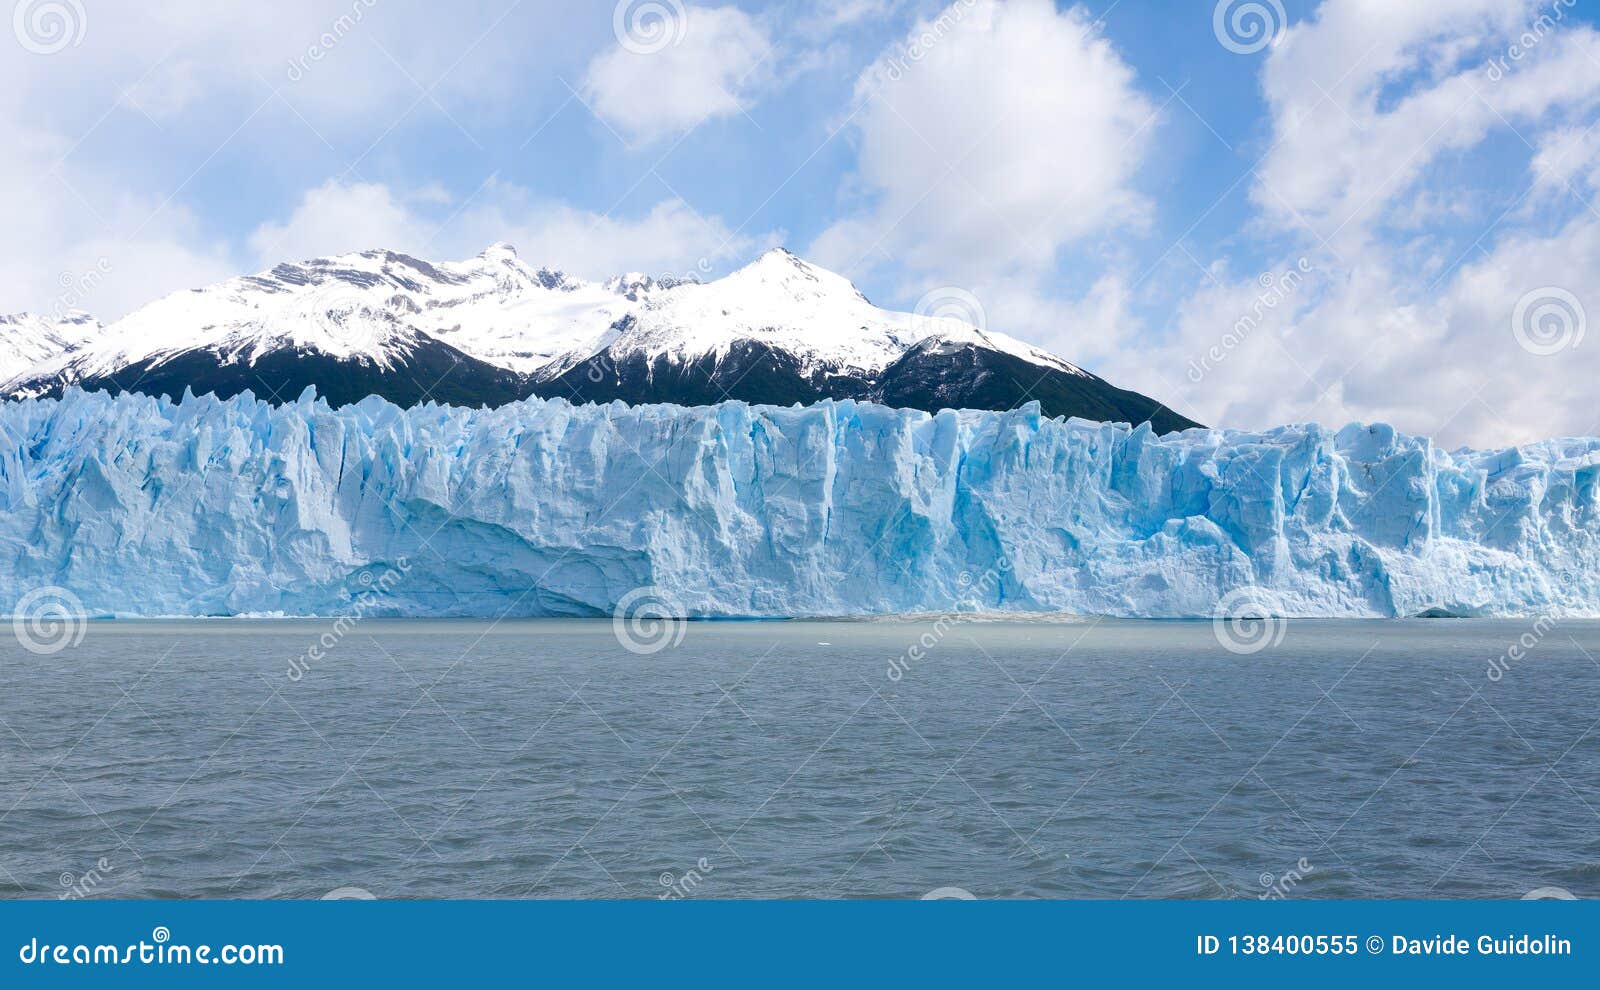 perito moreno glacier view, patagonia scenery, argentina